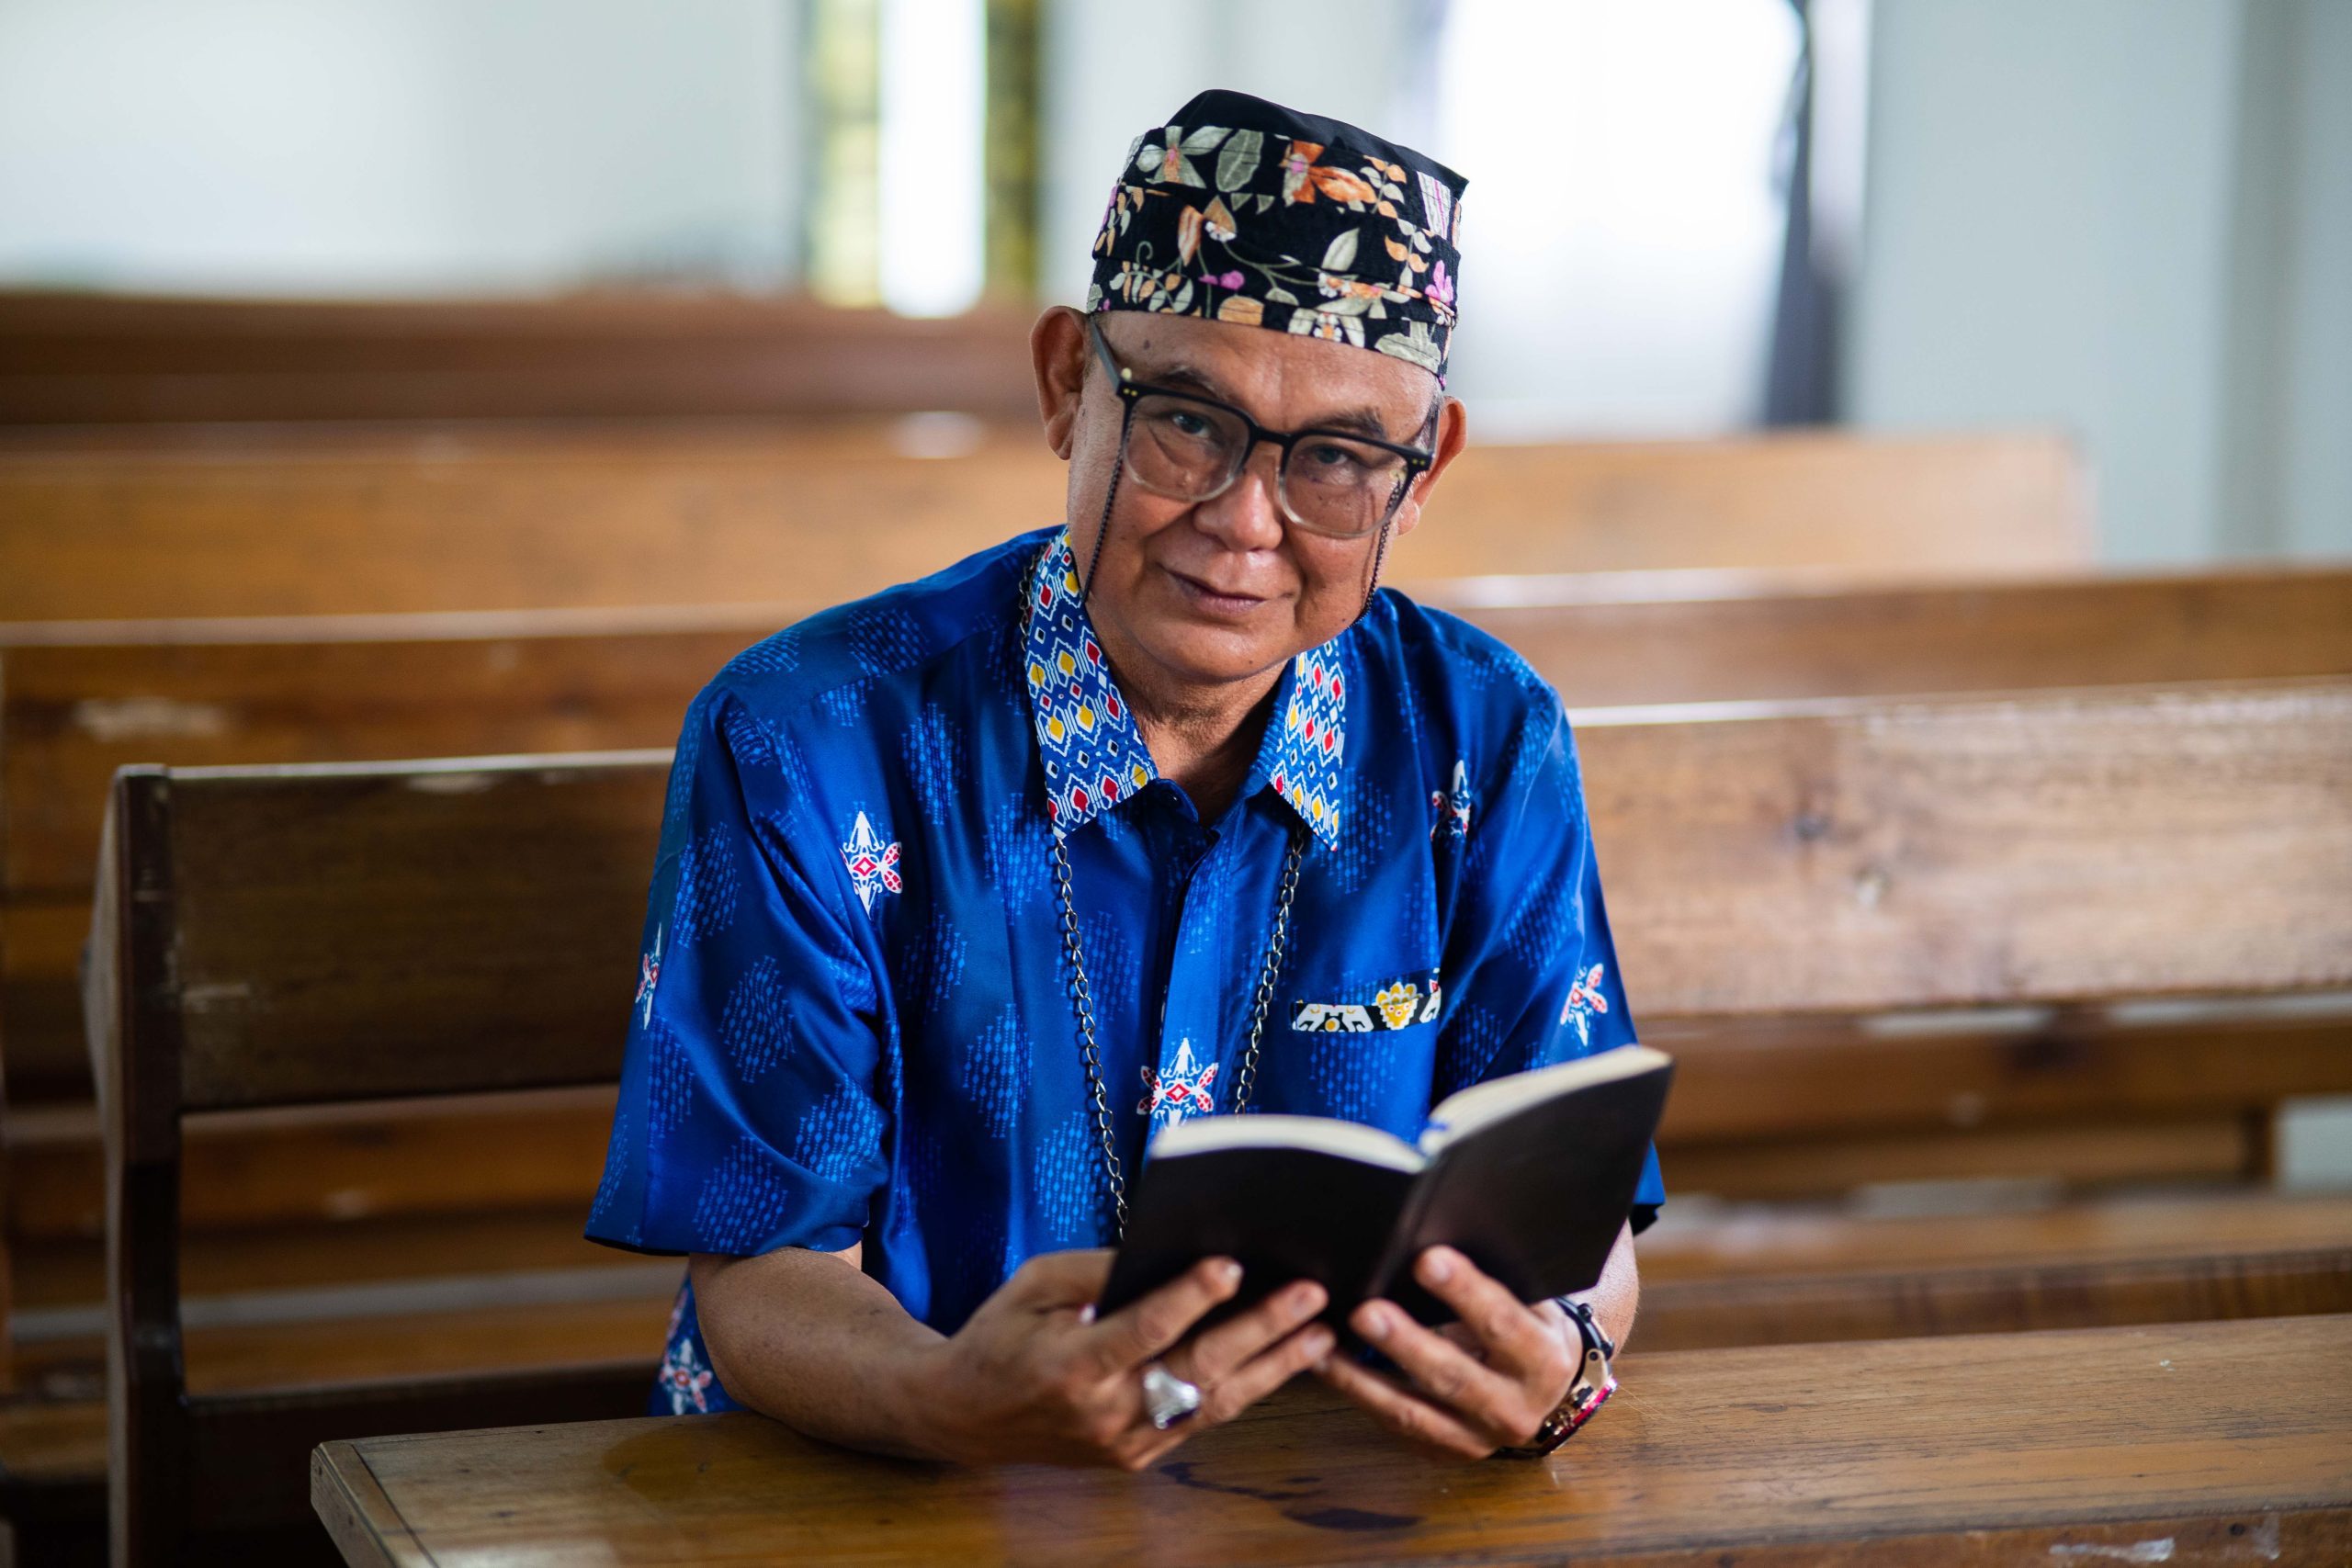 Indonesische man zit in schoolbankje met het Nieuwe Testament van de Bijbel in zijn eigen taal.